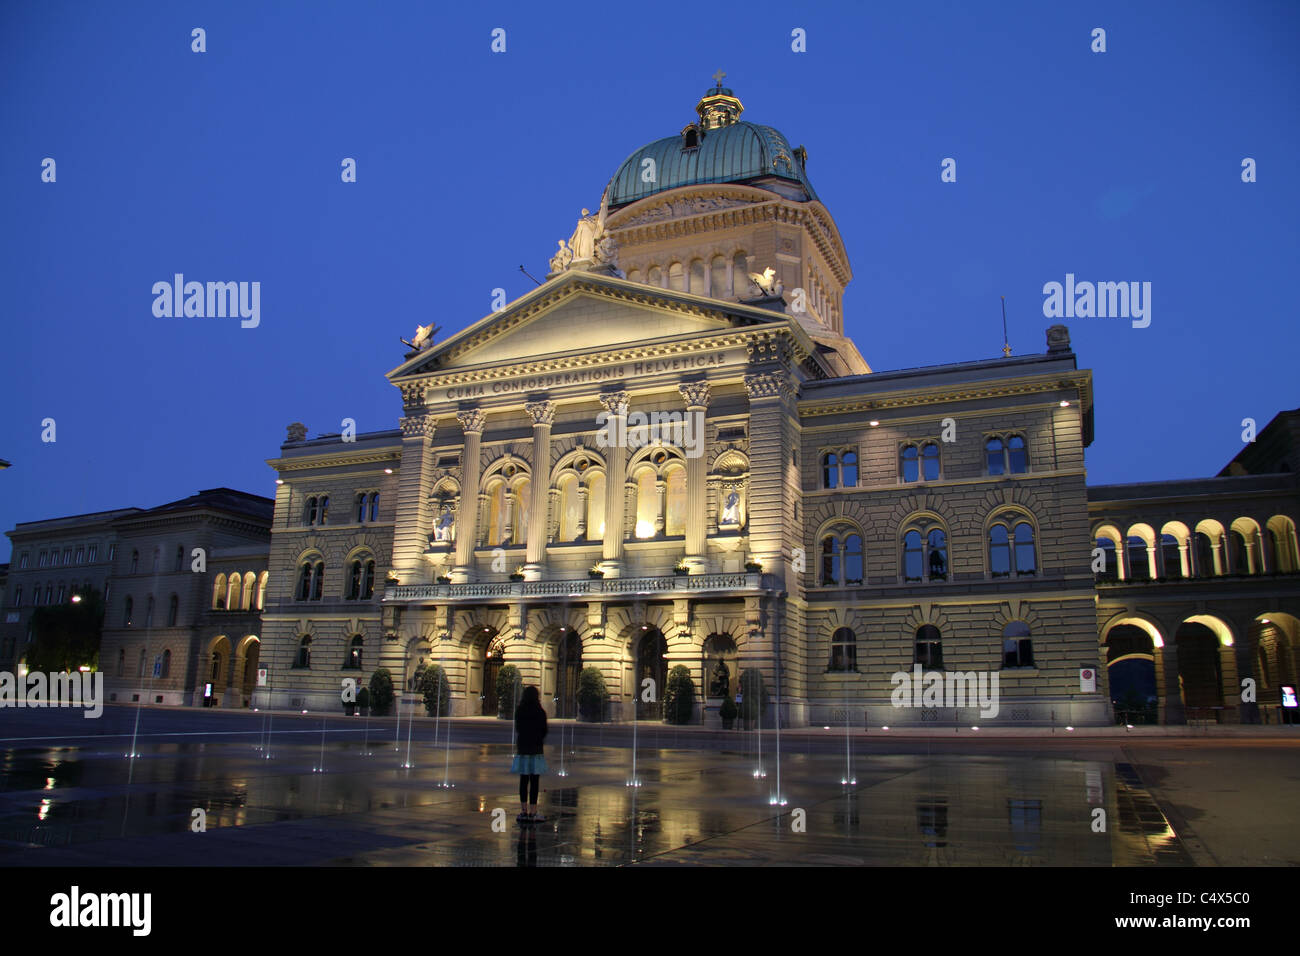 Berne, de style florentin, le parlement, le Palais fédéral à la tombée de la Bundesplatz @ avec 26 fontaines représentant chaque canton suisse Banque D'Images